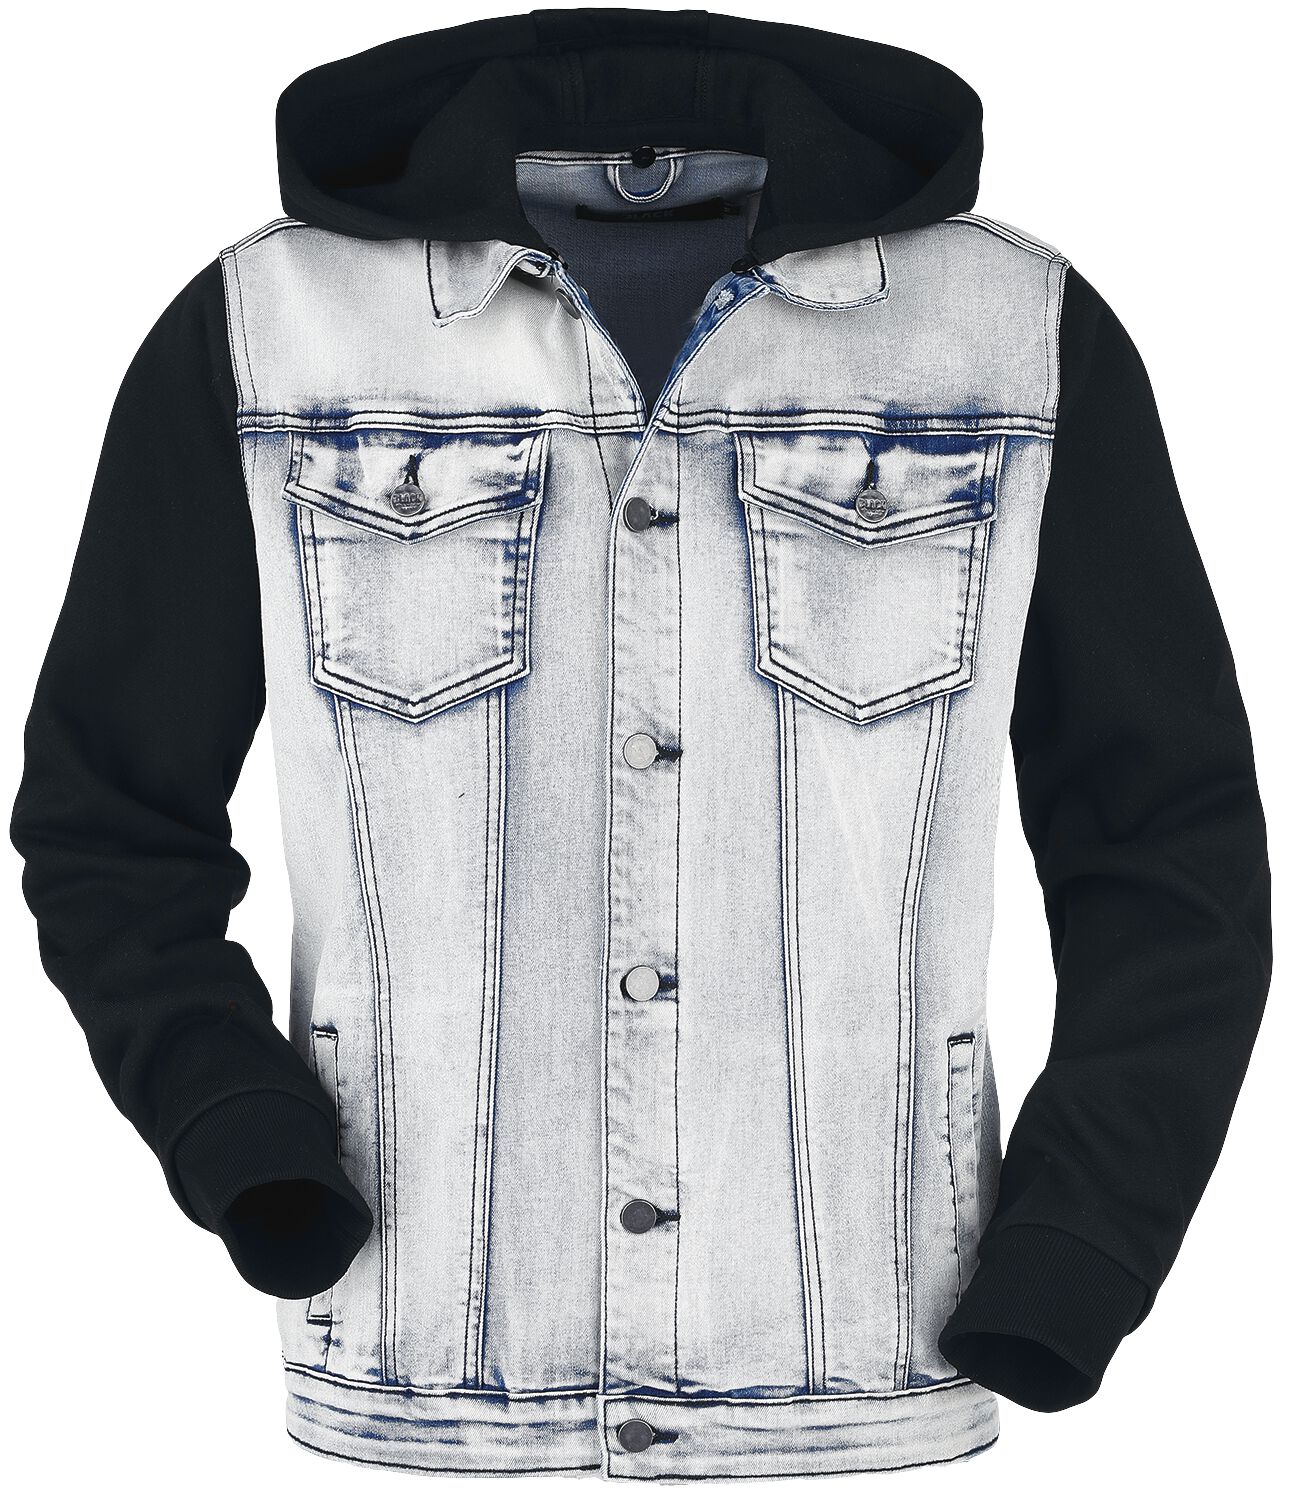 Black Premium by EMP Übergangsjacke - Jeansjacke mit Kapuze - S bis 5XL - für Männer - Größe M - blau/schwarz